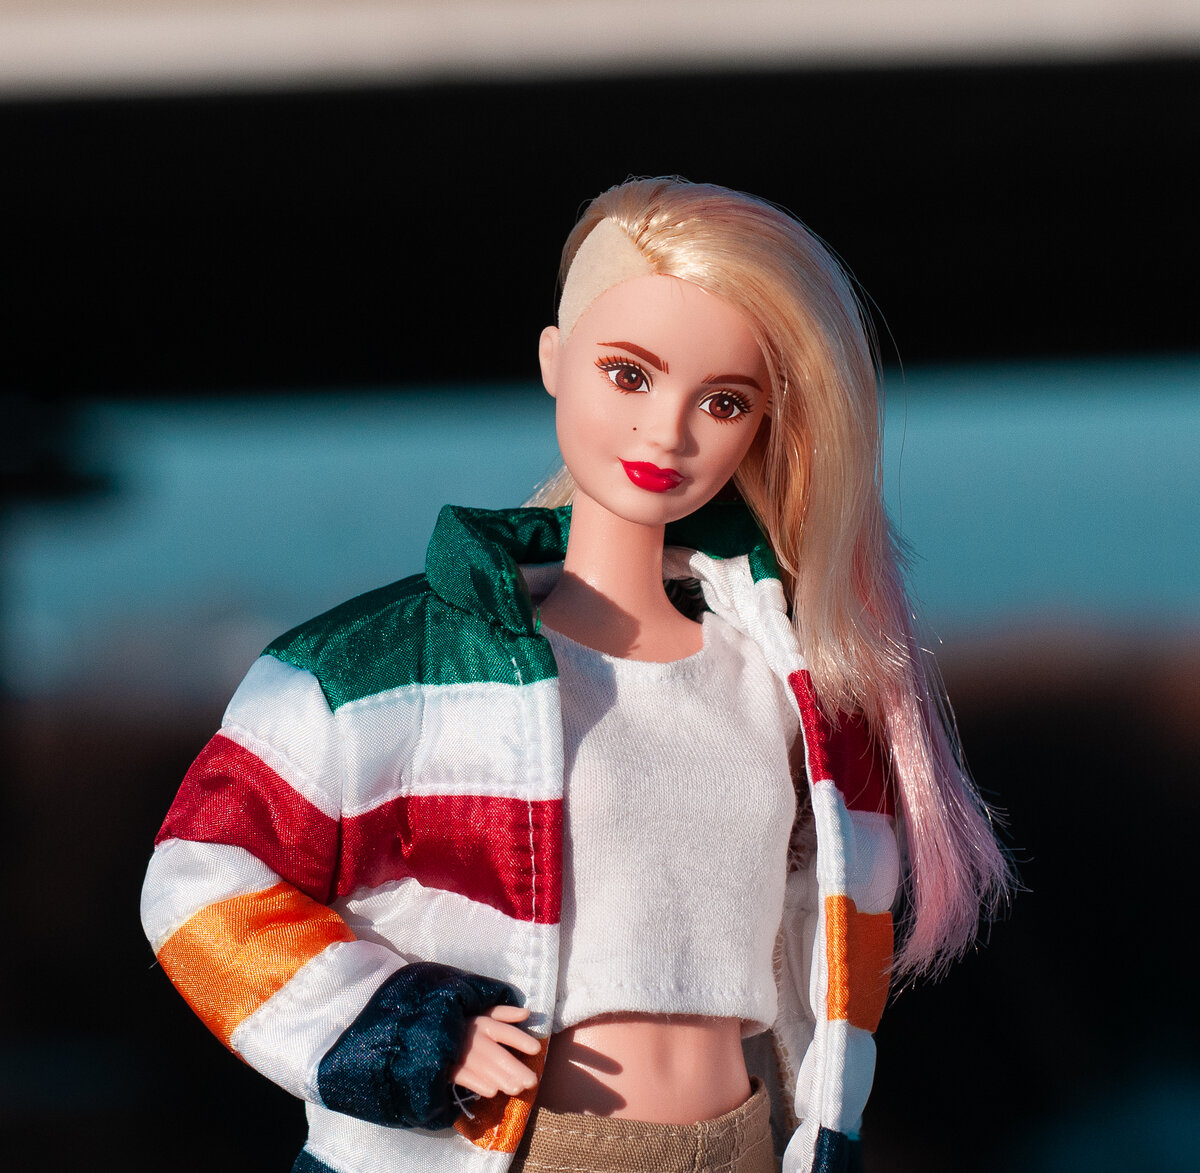 🕺💃 Обработай своё фото в стиле Barbie! — Офтоп на fitdiets.ru